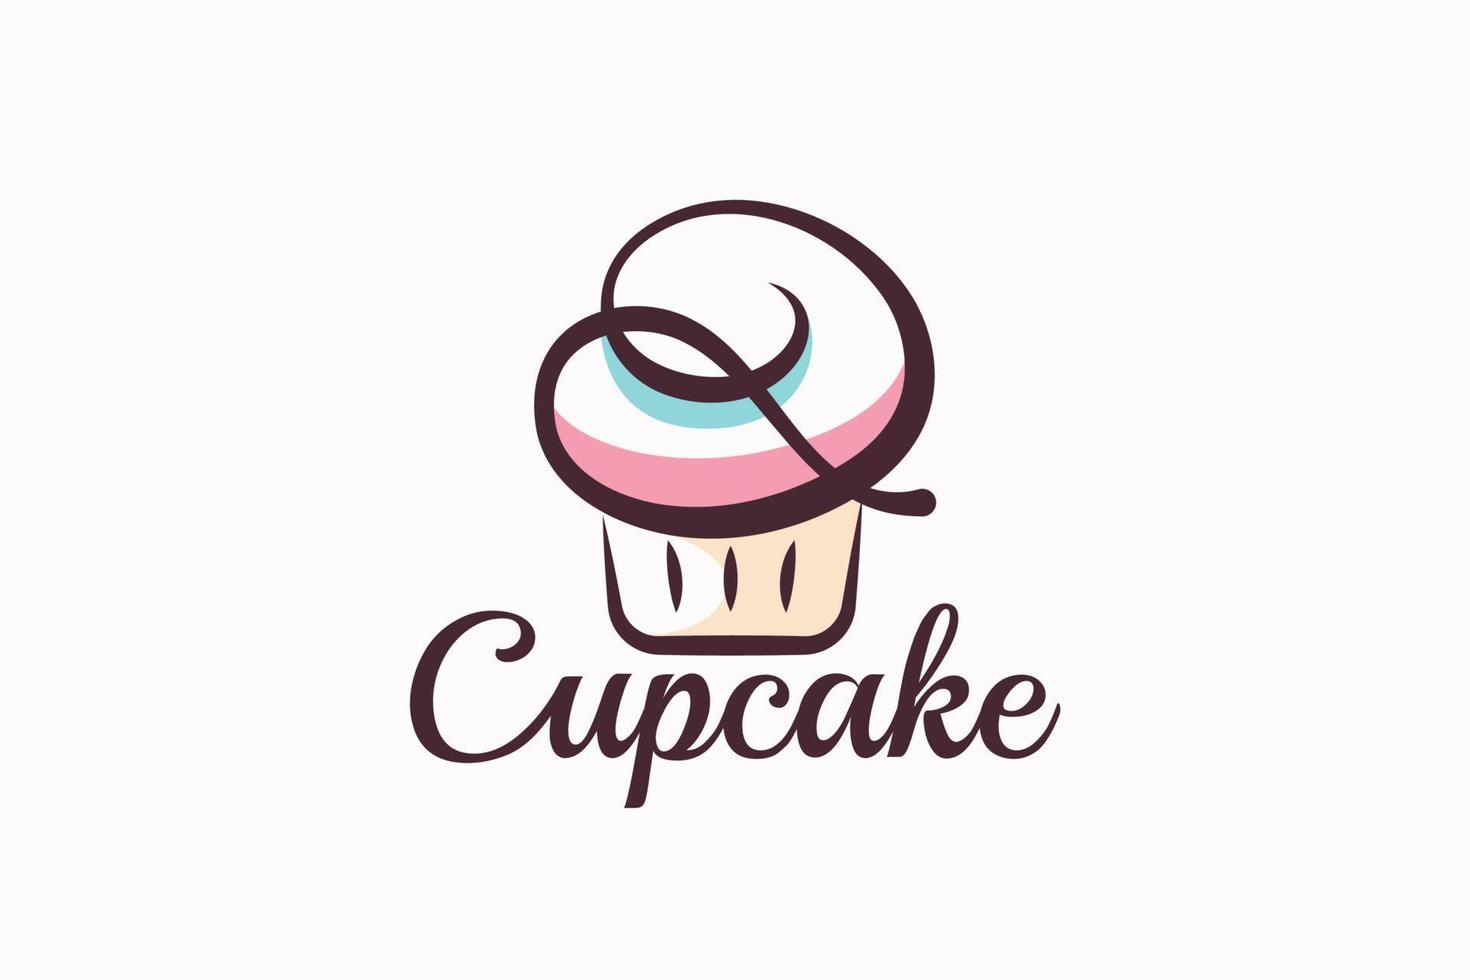 petit gâteau logo avec une combinaison de styliste petit gâteau et lettre q pour tout entreprise, surtout pour boulangeries, pâtisseries, café, etc. vecteur